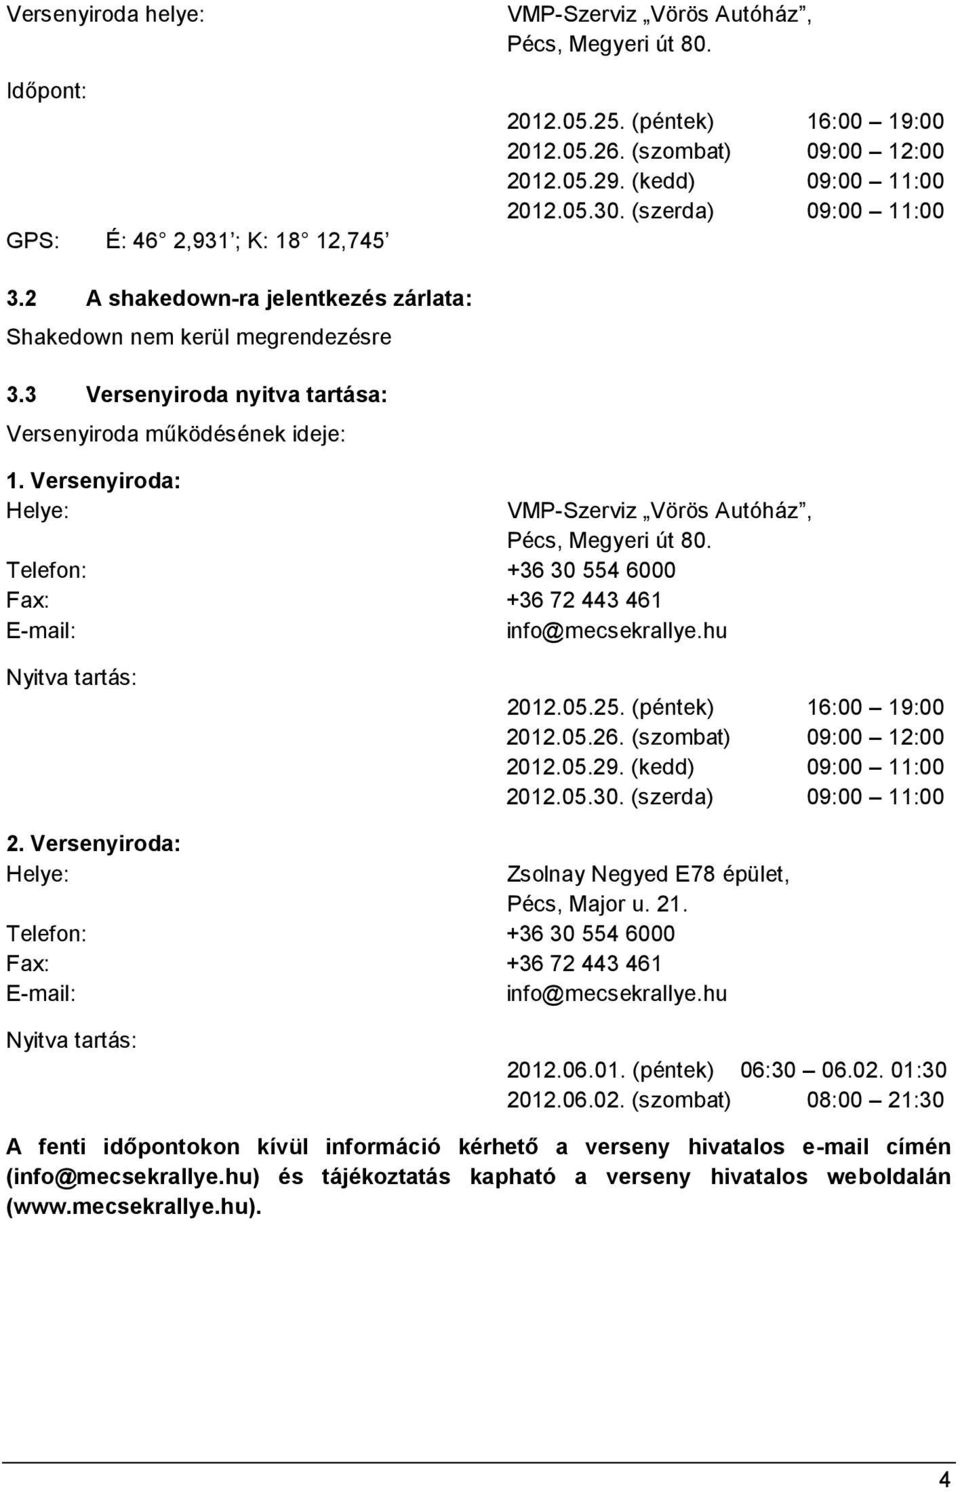 Versenyiroda: Helye: VMP-Szerviz Vörös Autóház, Pécs, Megyeri út 80. Telefon: +36 30 554 6000 Fax: +36 72 443 461 E-mail: info@mecsekrallye.hu Nyitva tartás: 2012.05.25. (péntek) 16:00 19:00 2012.05.26.